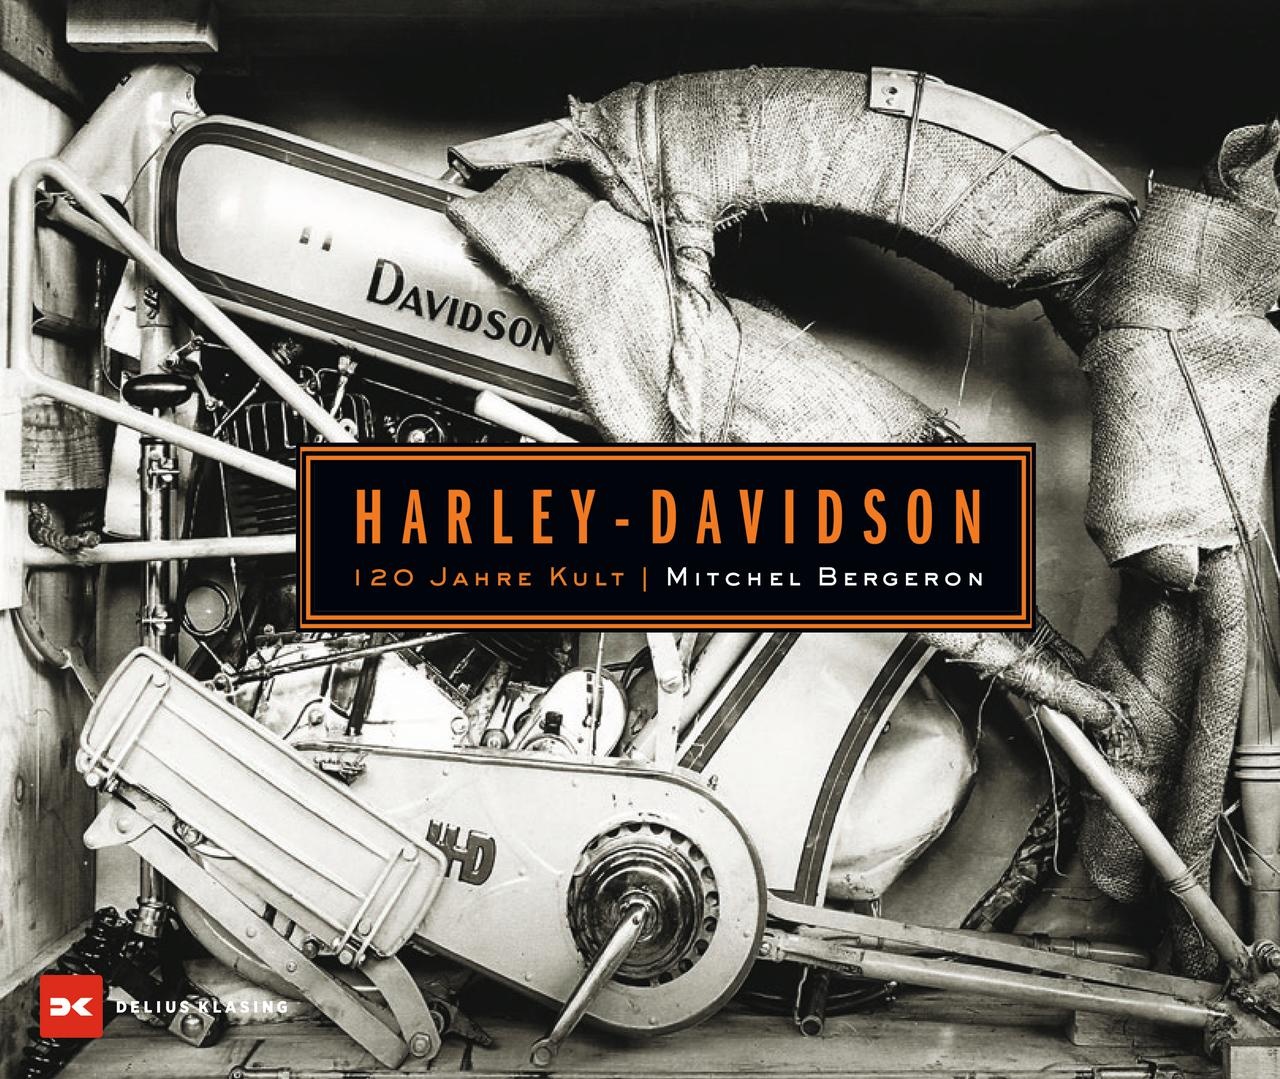 Harley-Davidson, Ratgeber von Mitchel Bergeron